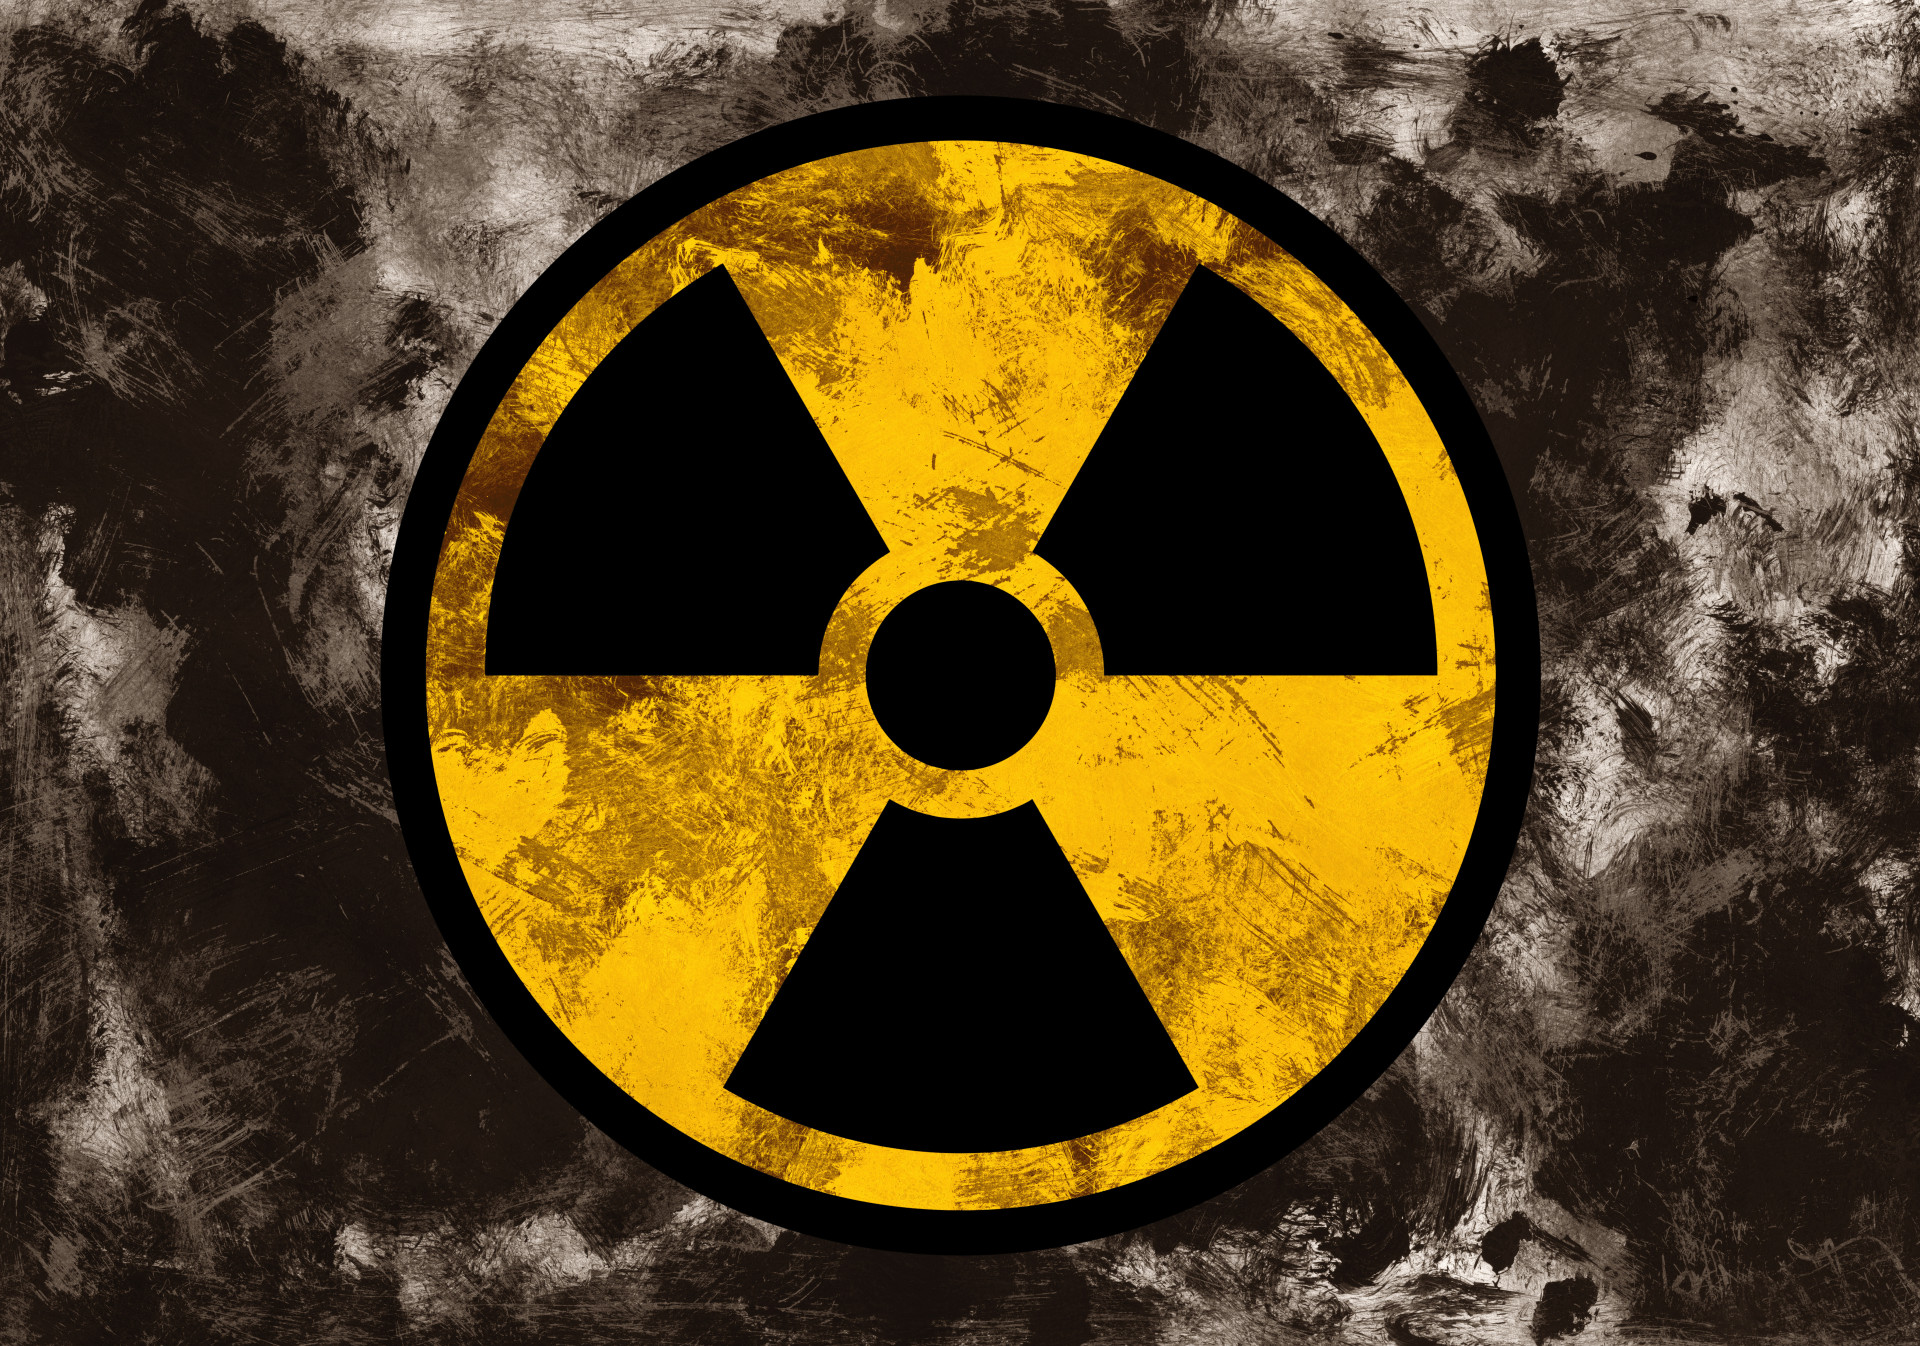 Обратная радиация. Сталкер значок радиационной опасности. Значок радиации сталкер. Знак радиоактивности Чернобыль. Знак радиации Чернобыль.